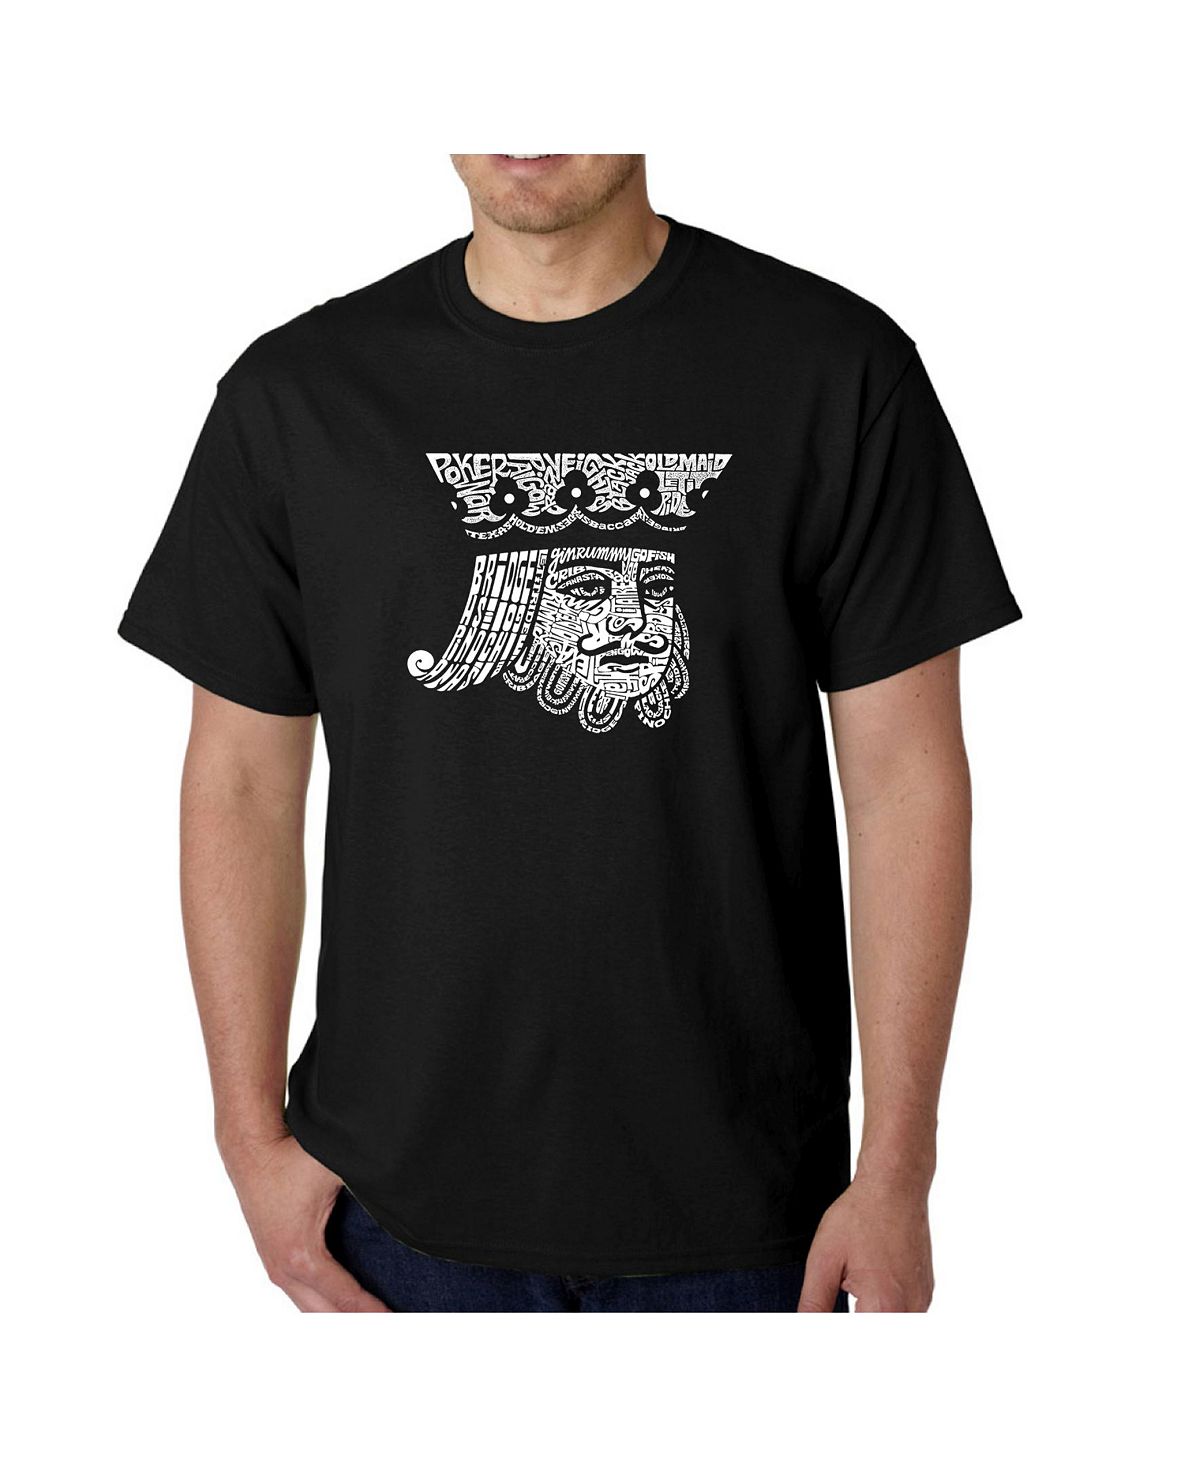 Мужская футболка с рисунком Word Art — Пиковый король LA Pop Art дюбов в карточные игры